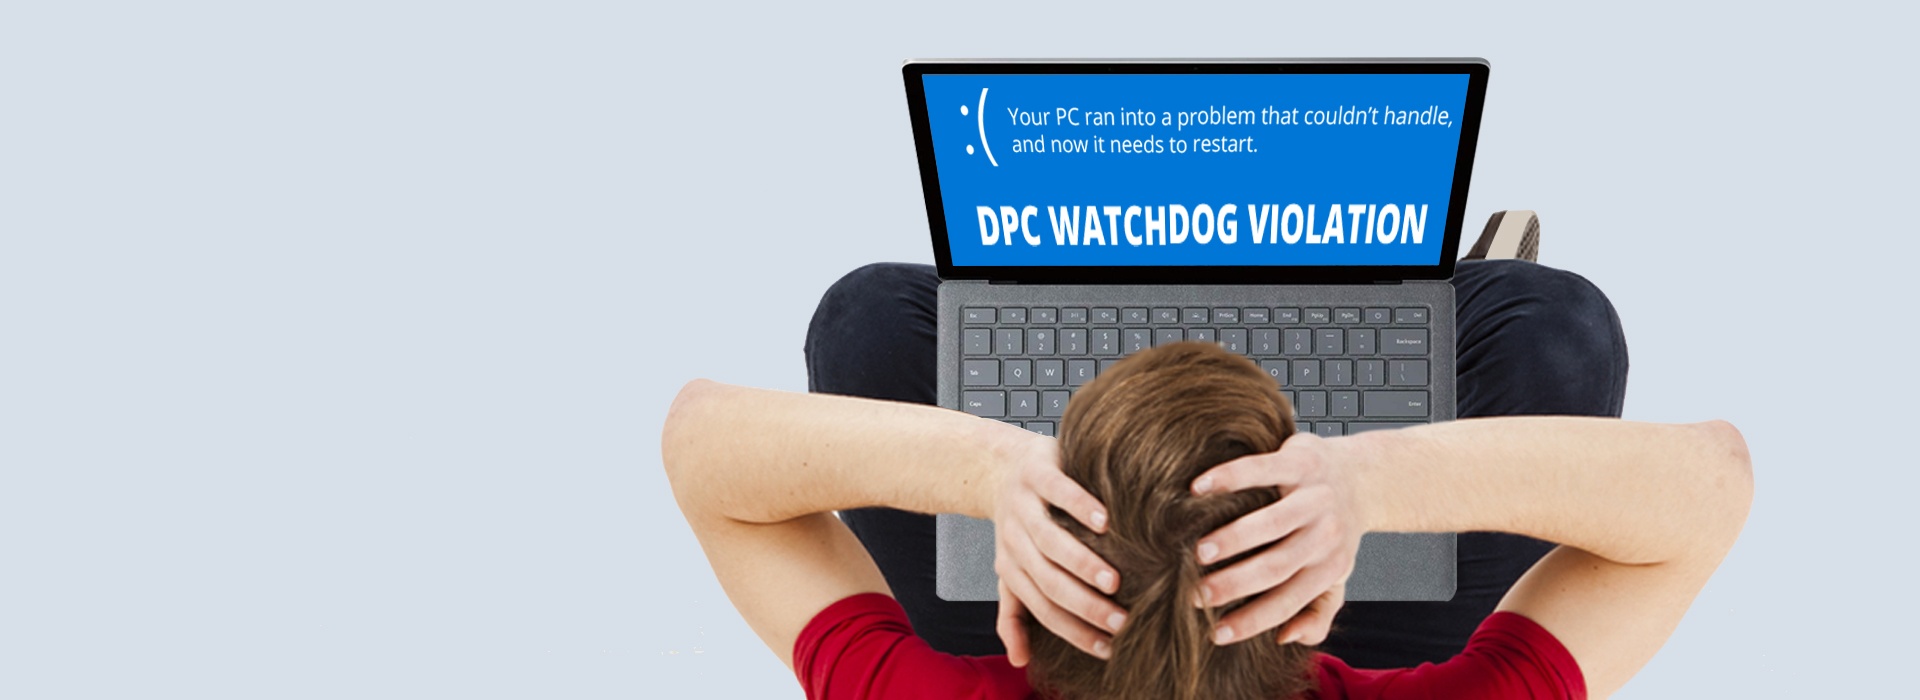 error dpc_watchdog_violation windows 8.1